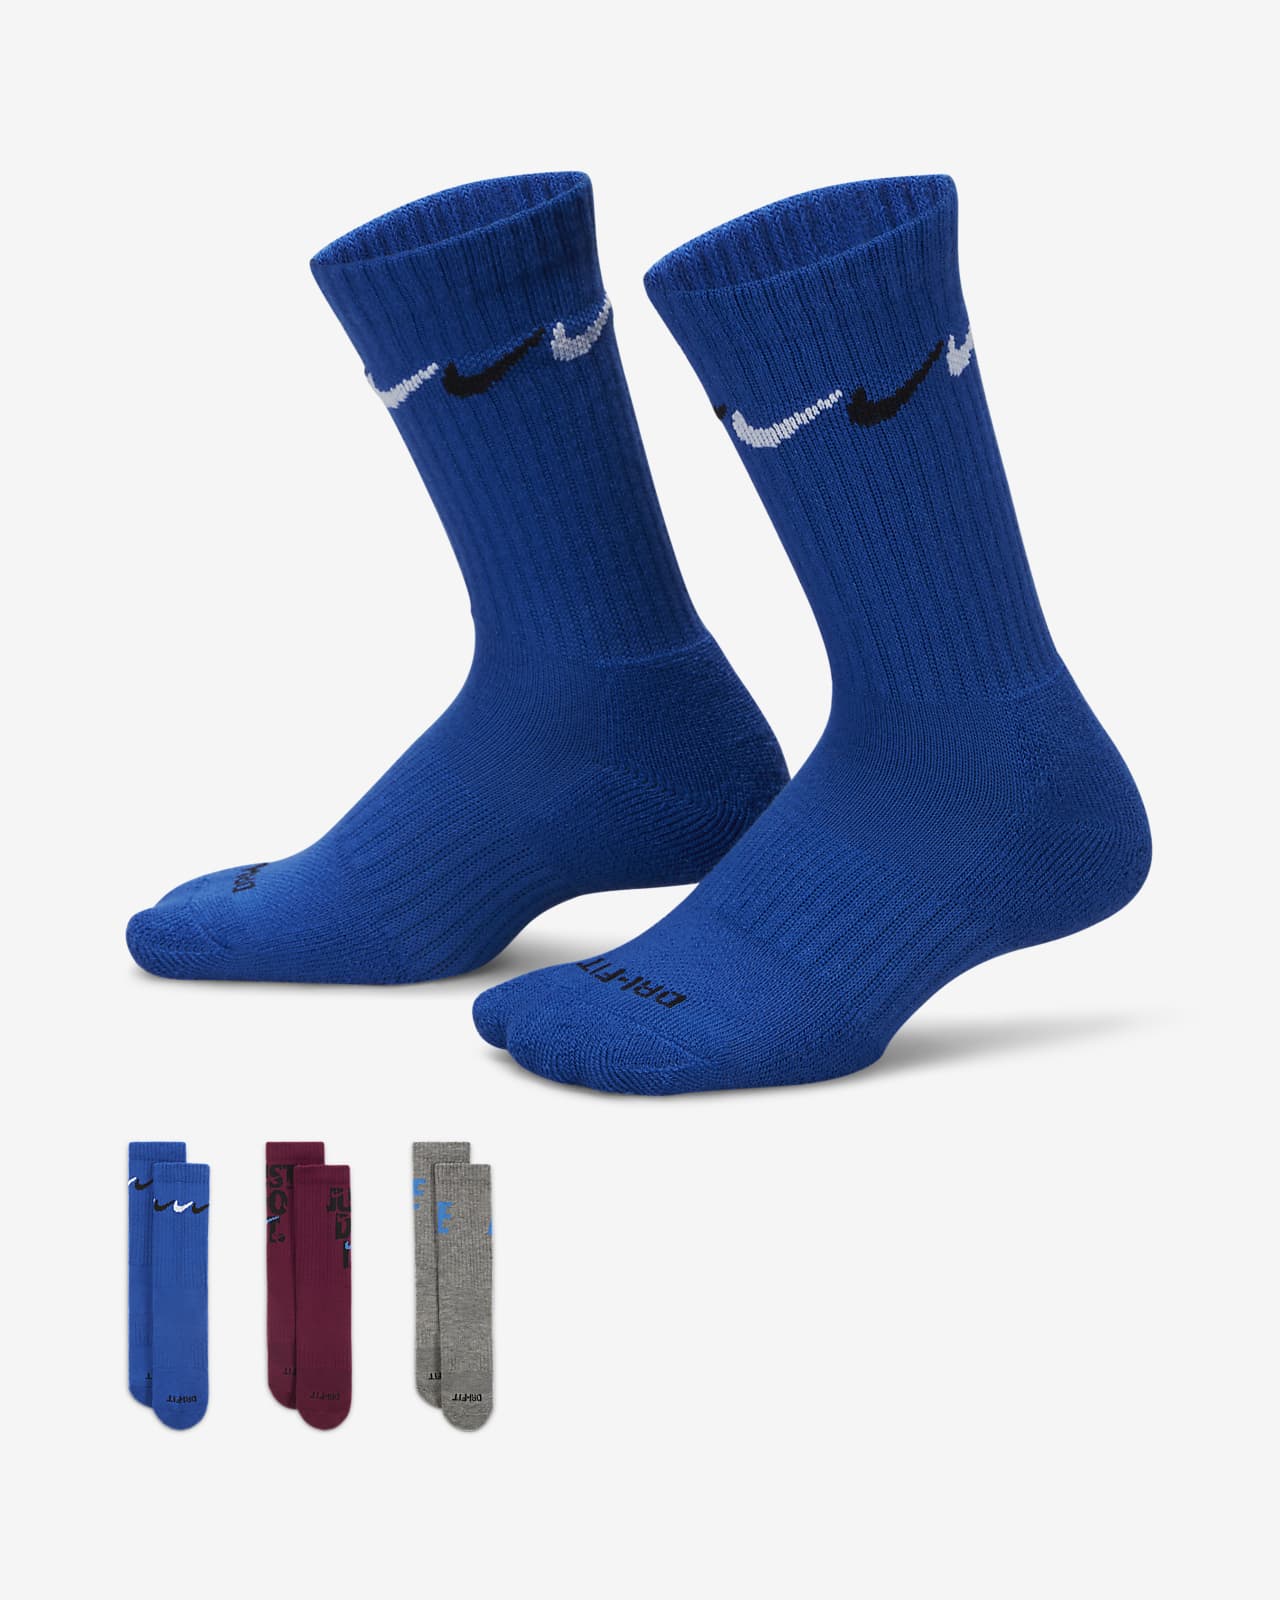 Nike Graphic Dri-FIT Crew Socks (3 Pairs) Little Kids' Socks